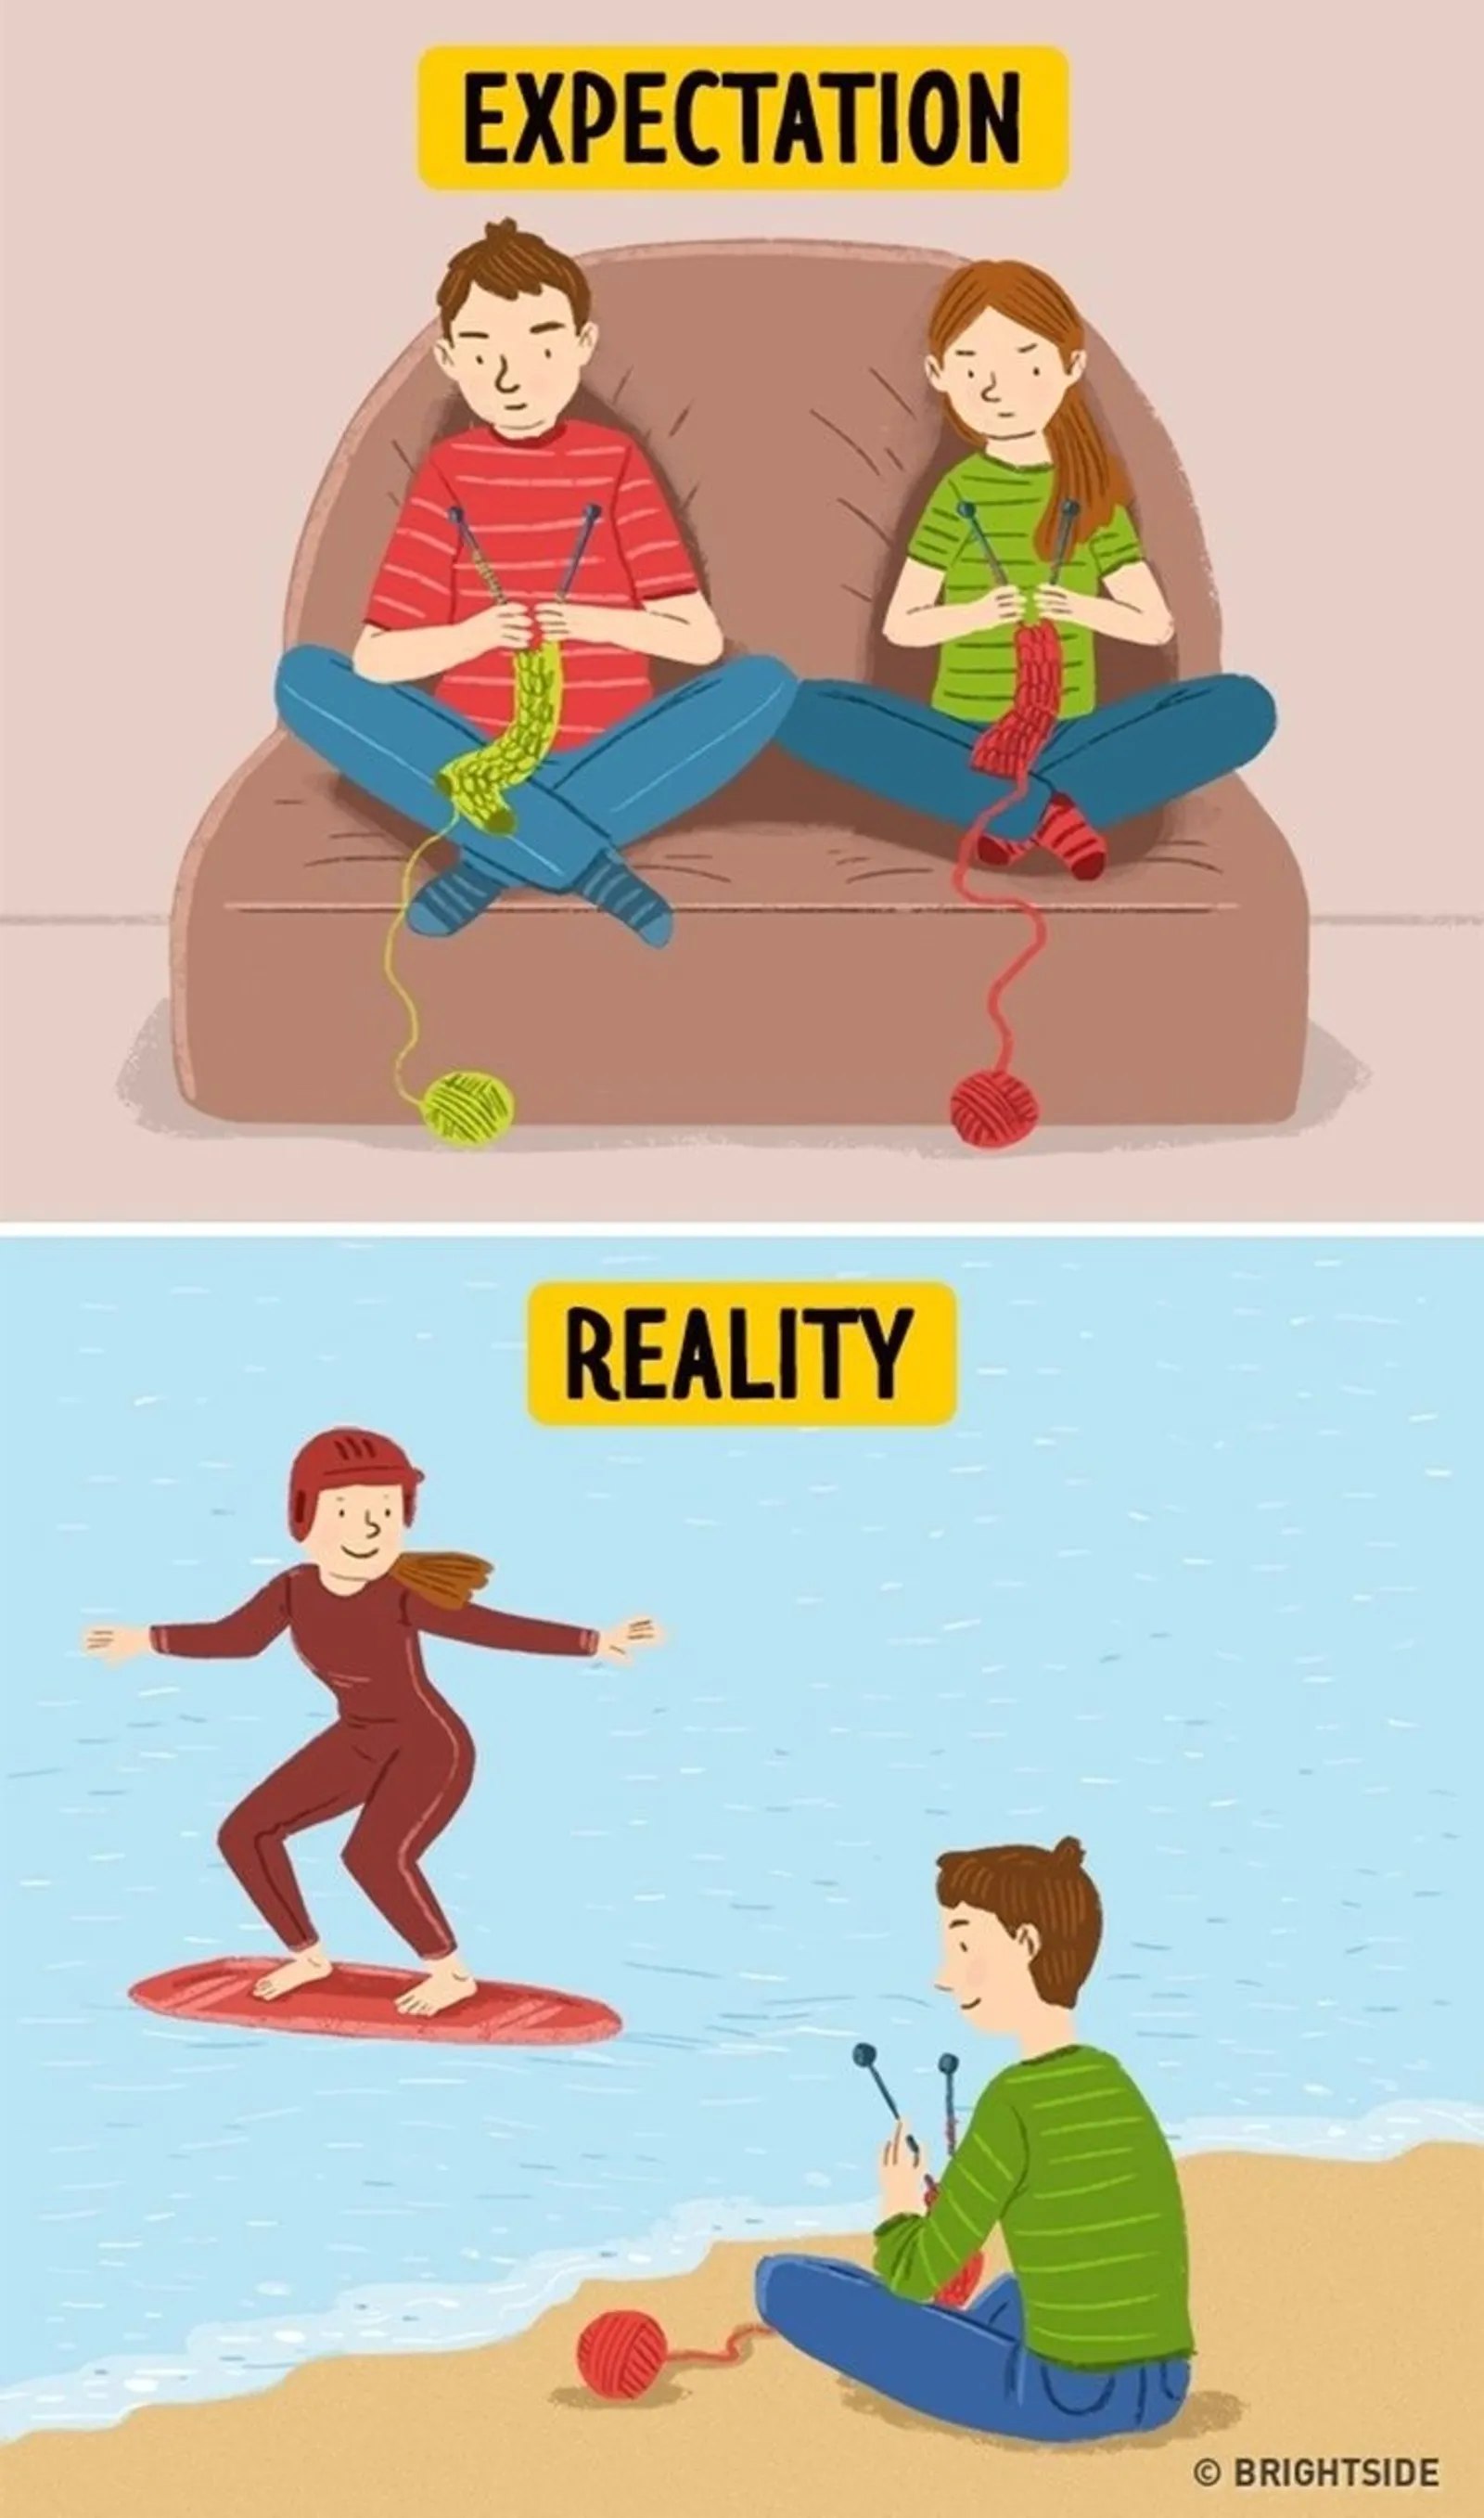 Ilustrasi tentang Ekspektasi dan Realitas dalam Hubungan yang Bahagia